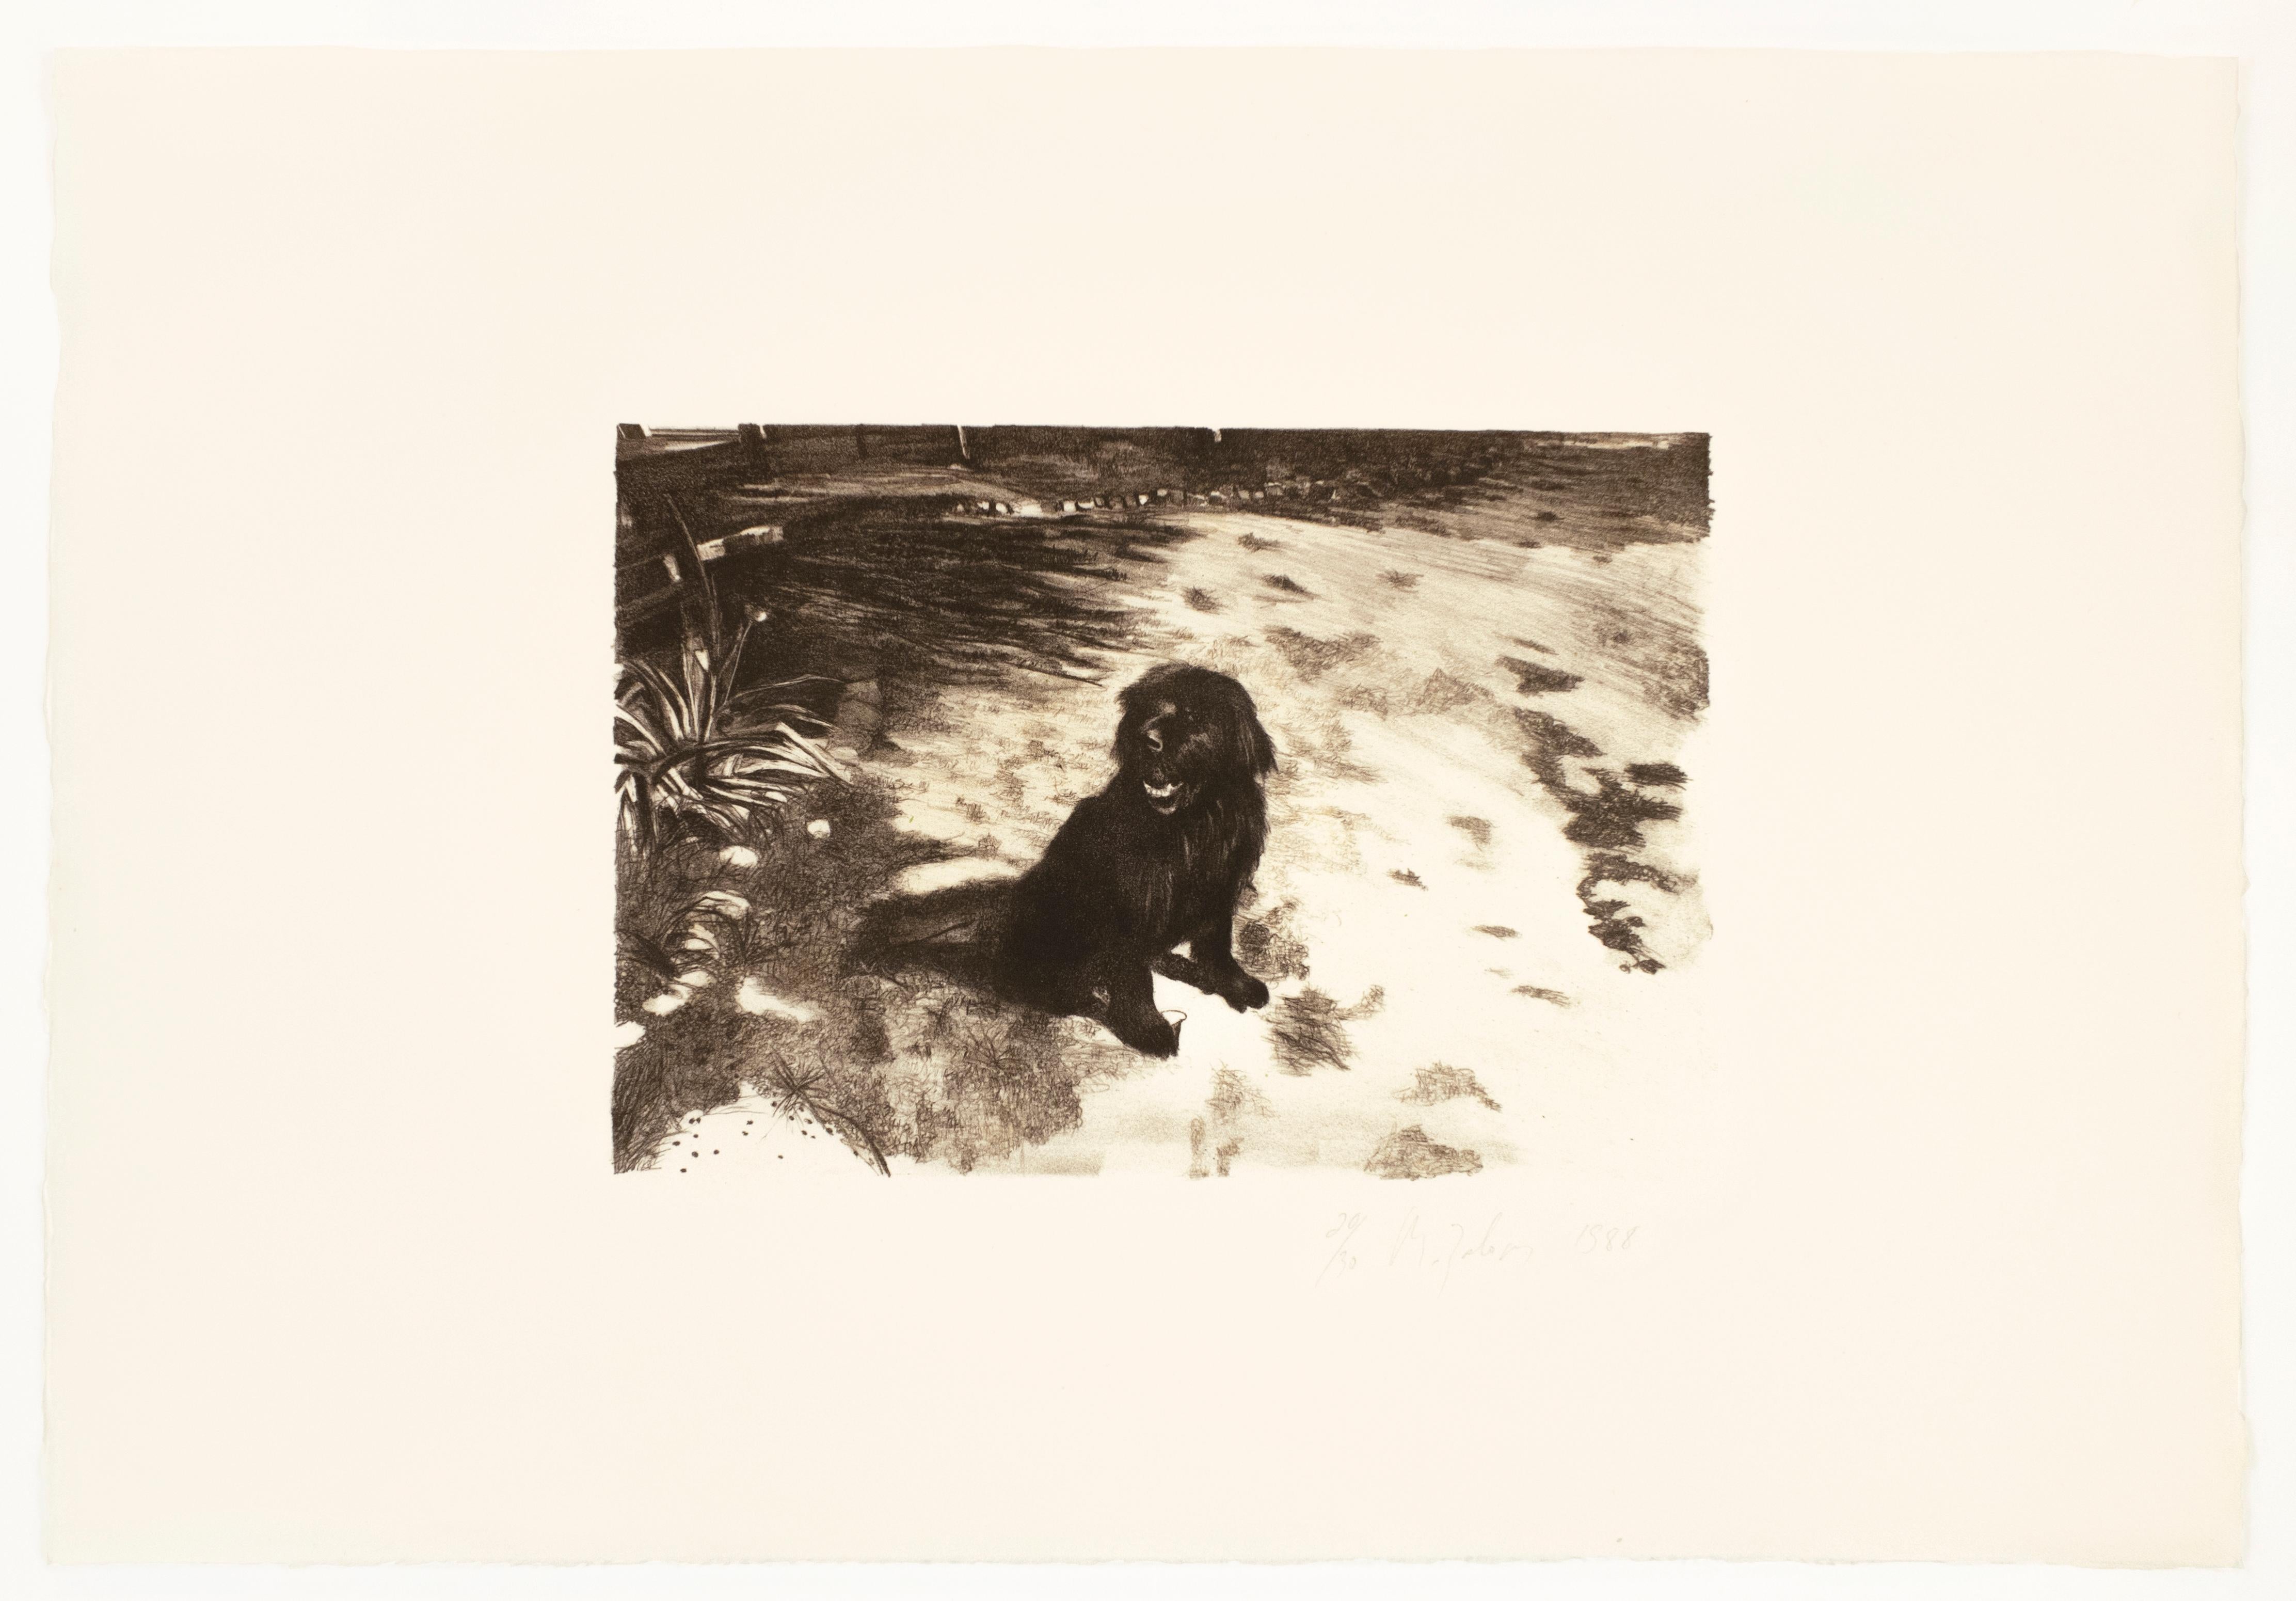 Dog : dessin réaliste et expressif d'un portrait en noir et blanc d'un chien de compagnie au soleil   - Print de Michele Zalopany